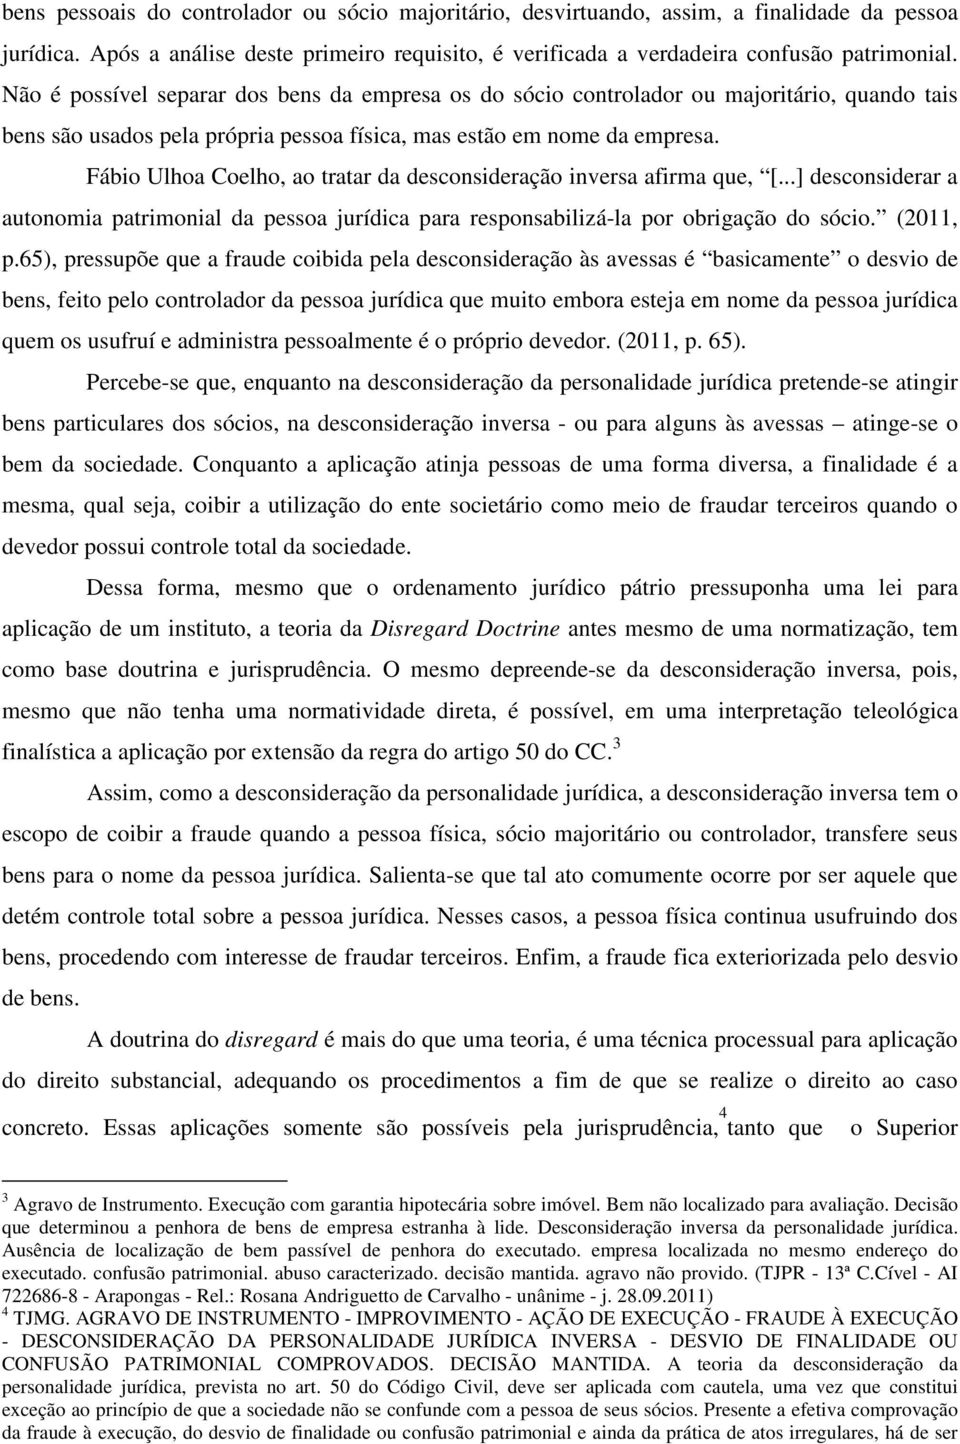 Fábio Ulhoa Coelho, ao tratar da desconsideração inversa afirma que, [...] desconsiderar a autonomia patrimonial da pessoa jurídica para responsabilizá-la por obrigação do sócio. (2011, p.